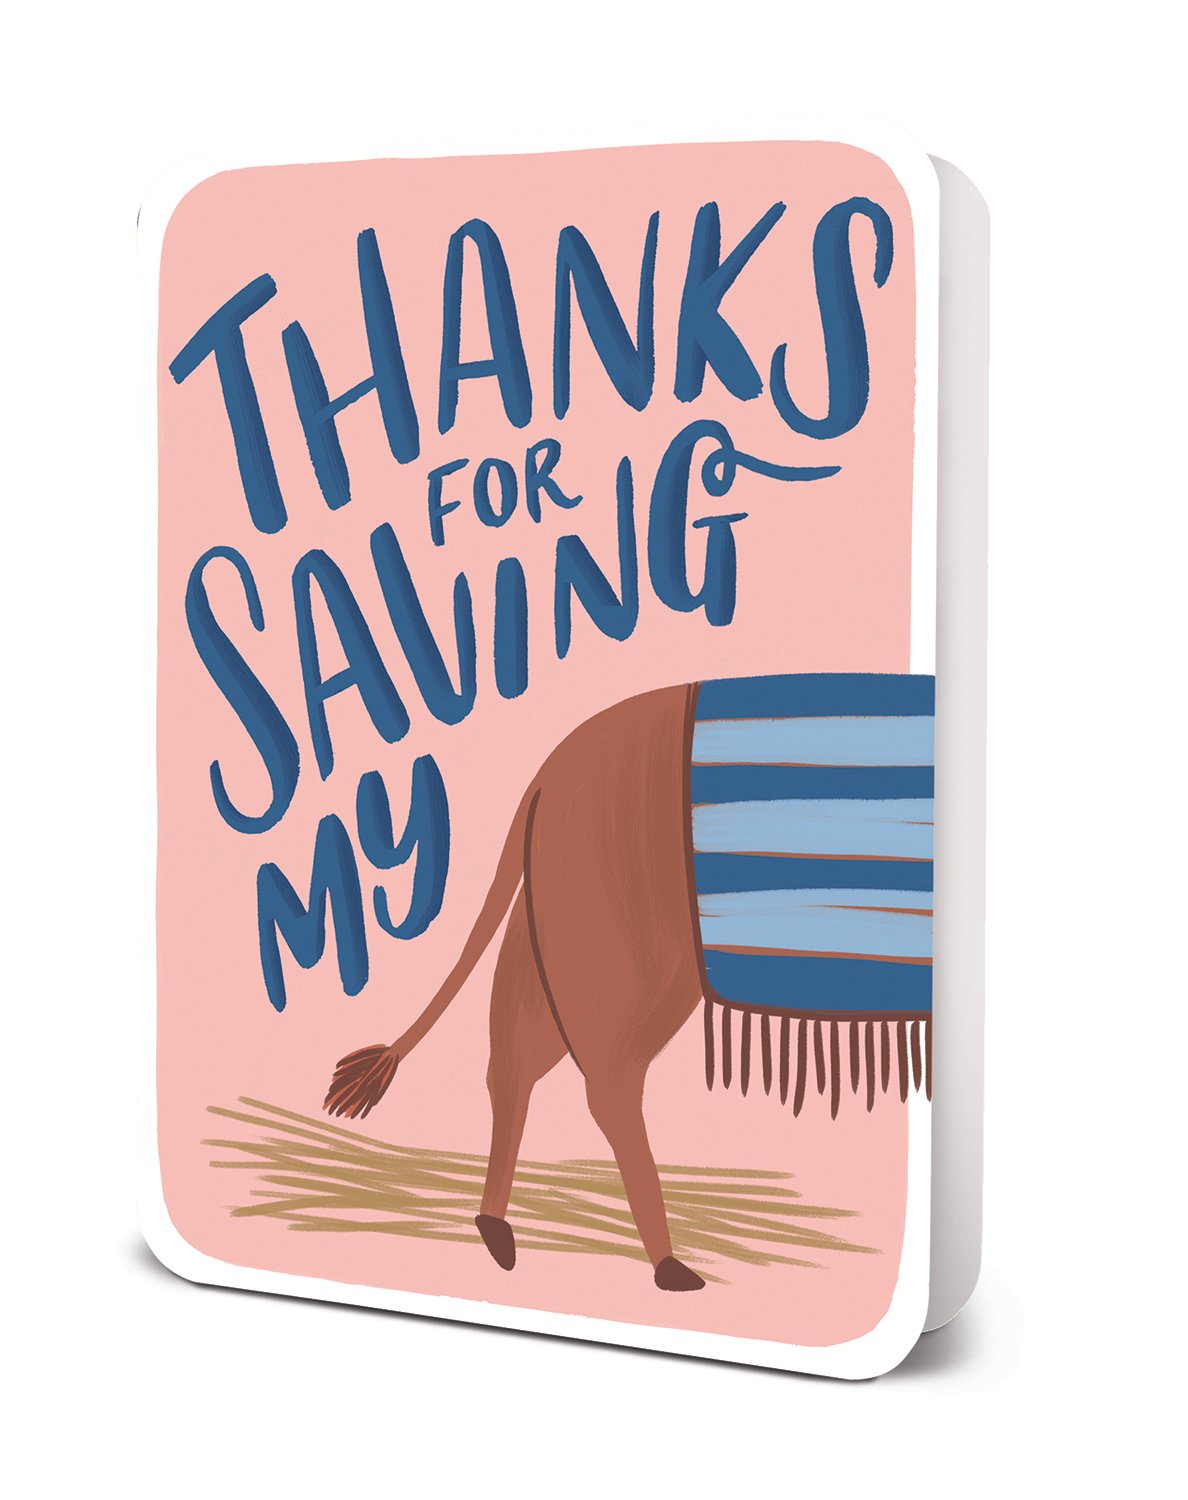 Thanks for Saving My - Greeting Card Greeting Card Orange Circle Studio